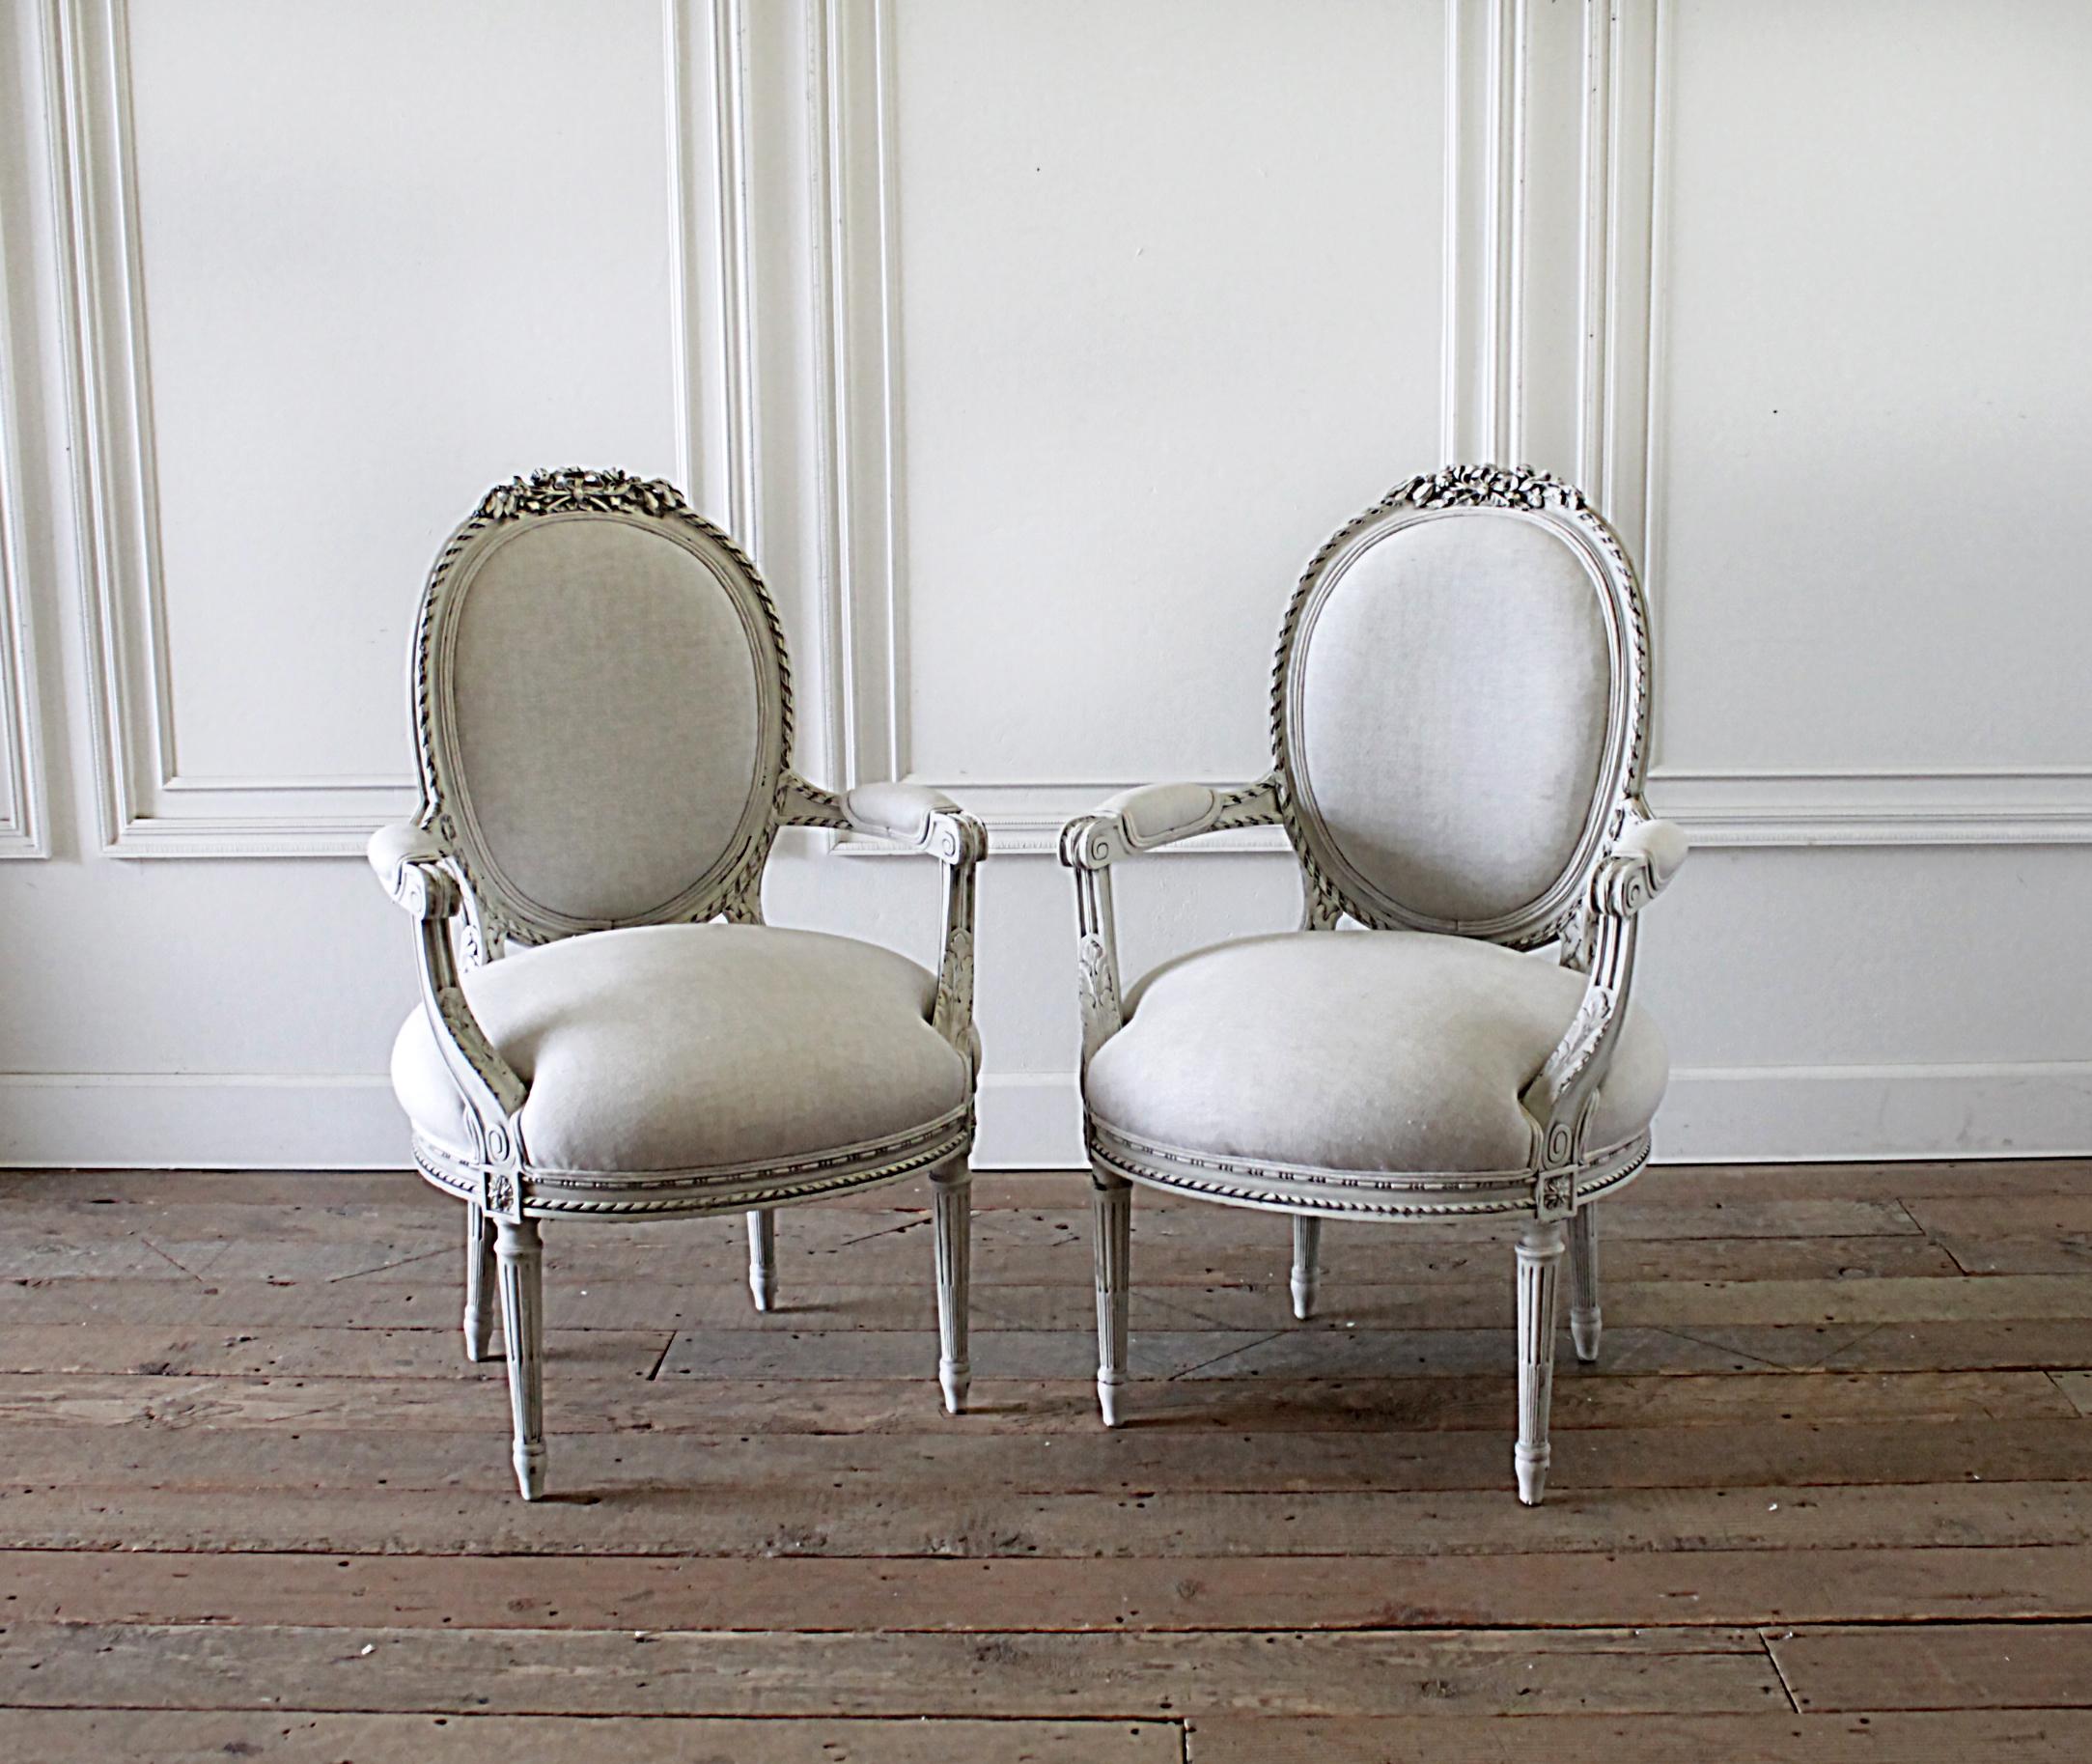 Anfang des 20. Jahrhunderts geschnitzt und bemalt Louis XVI-Stil Französisch offenen Arm Stühle 25